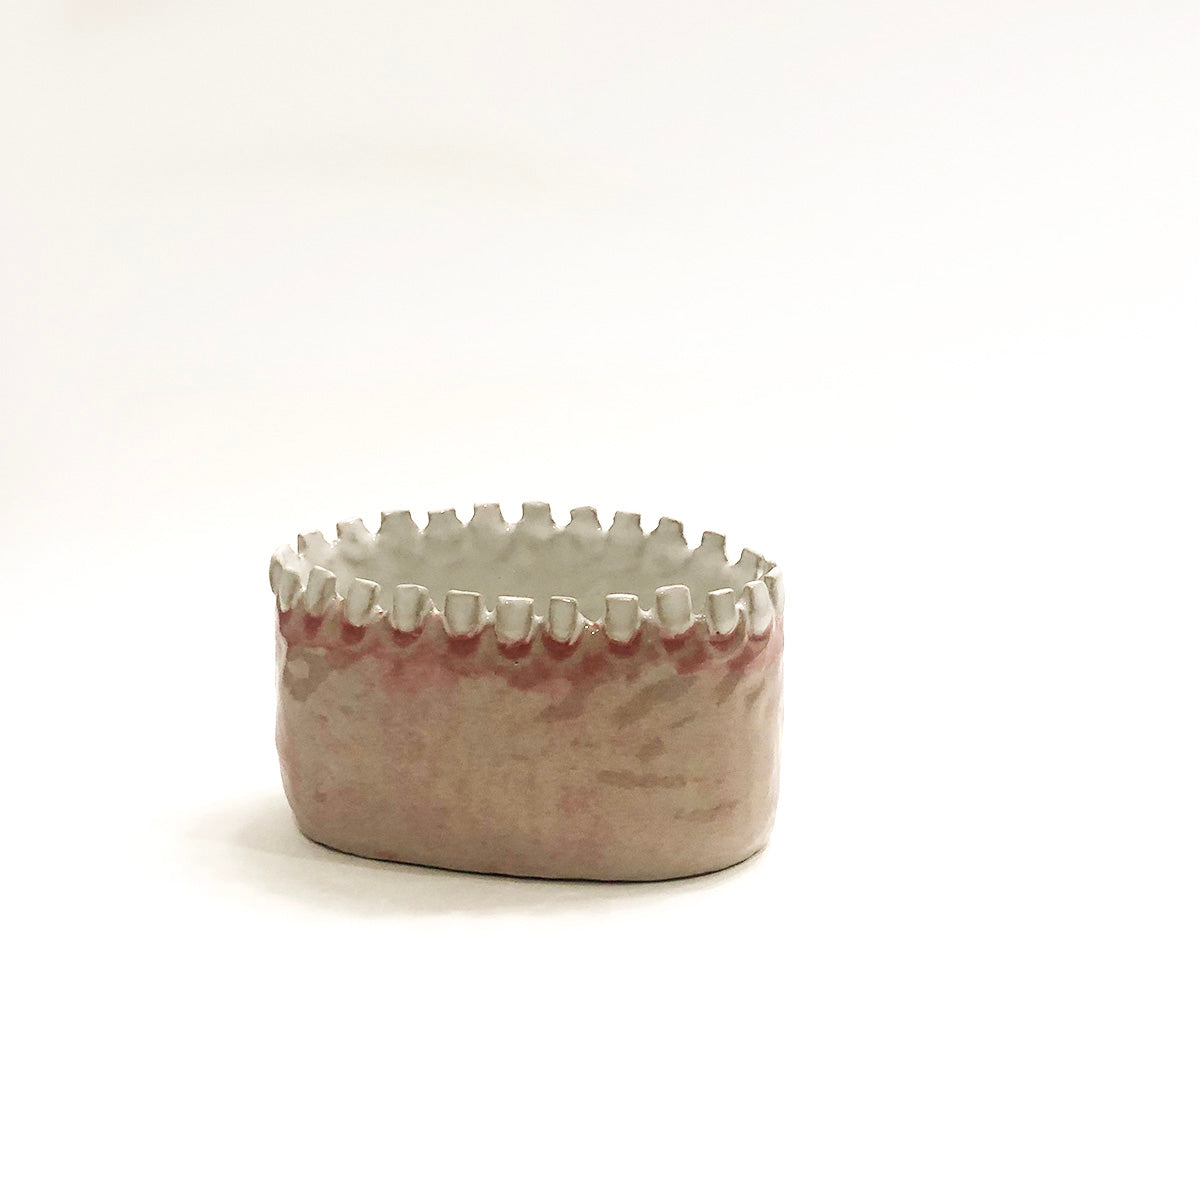 Medium  Ceramic Teeth Planter